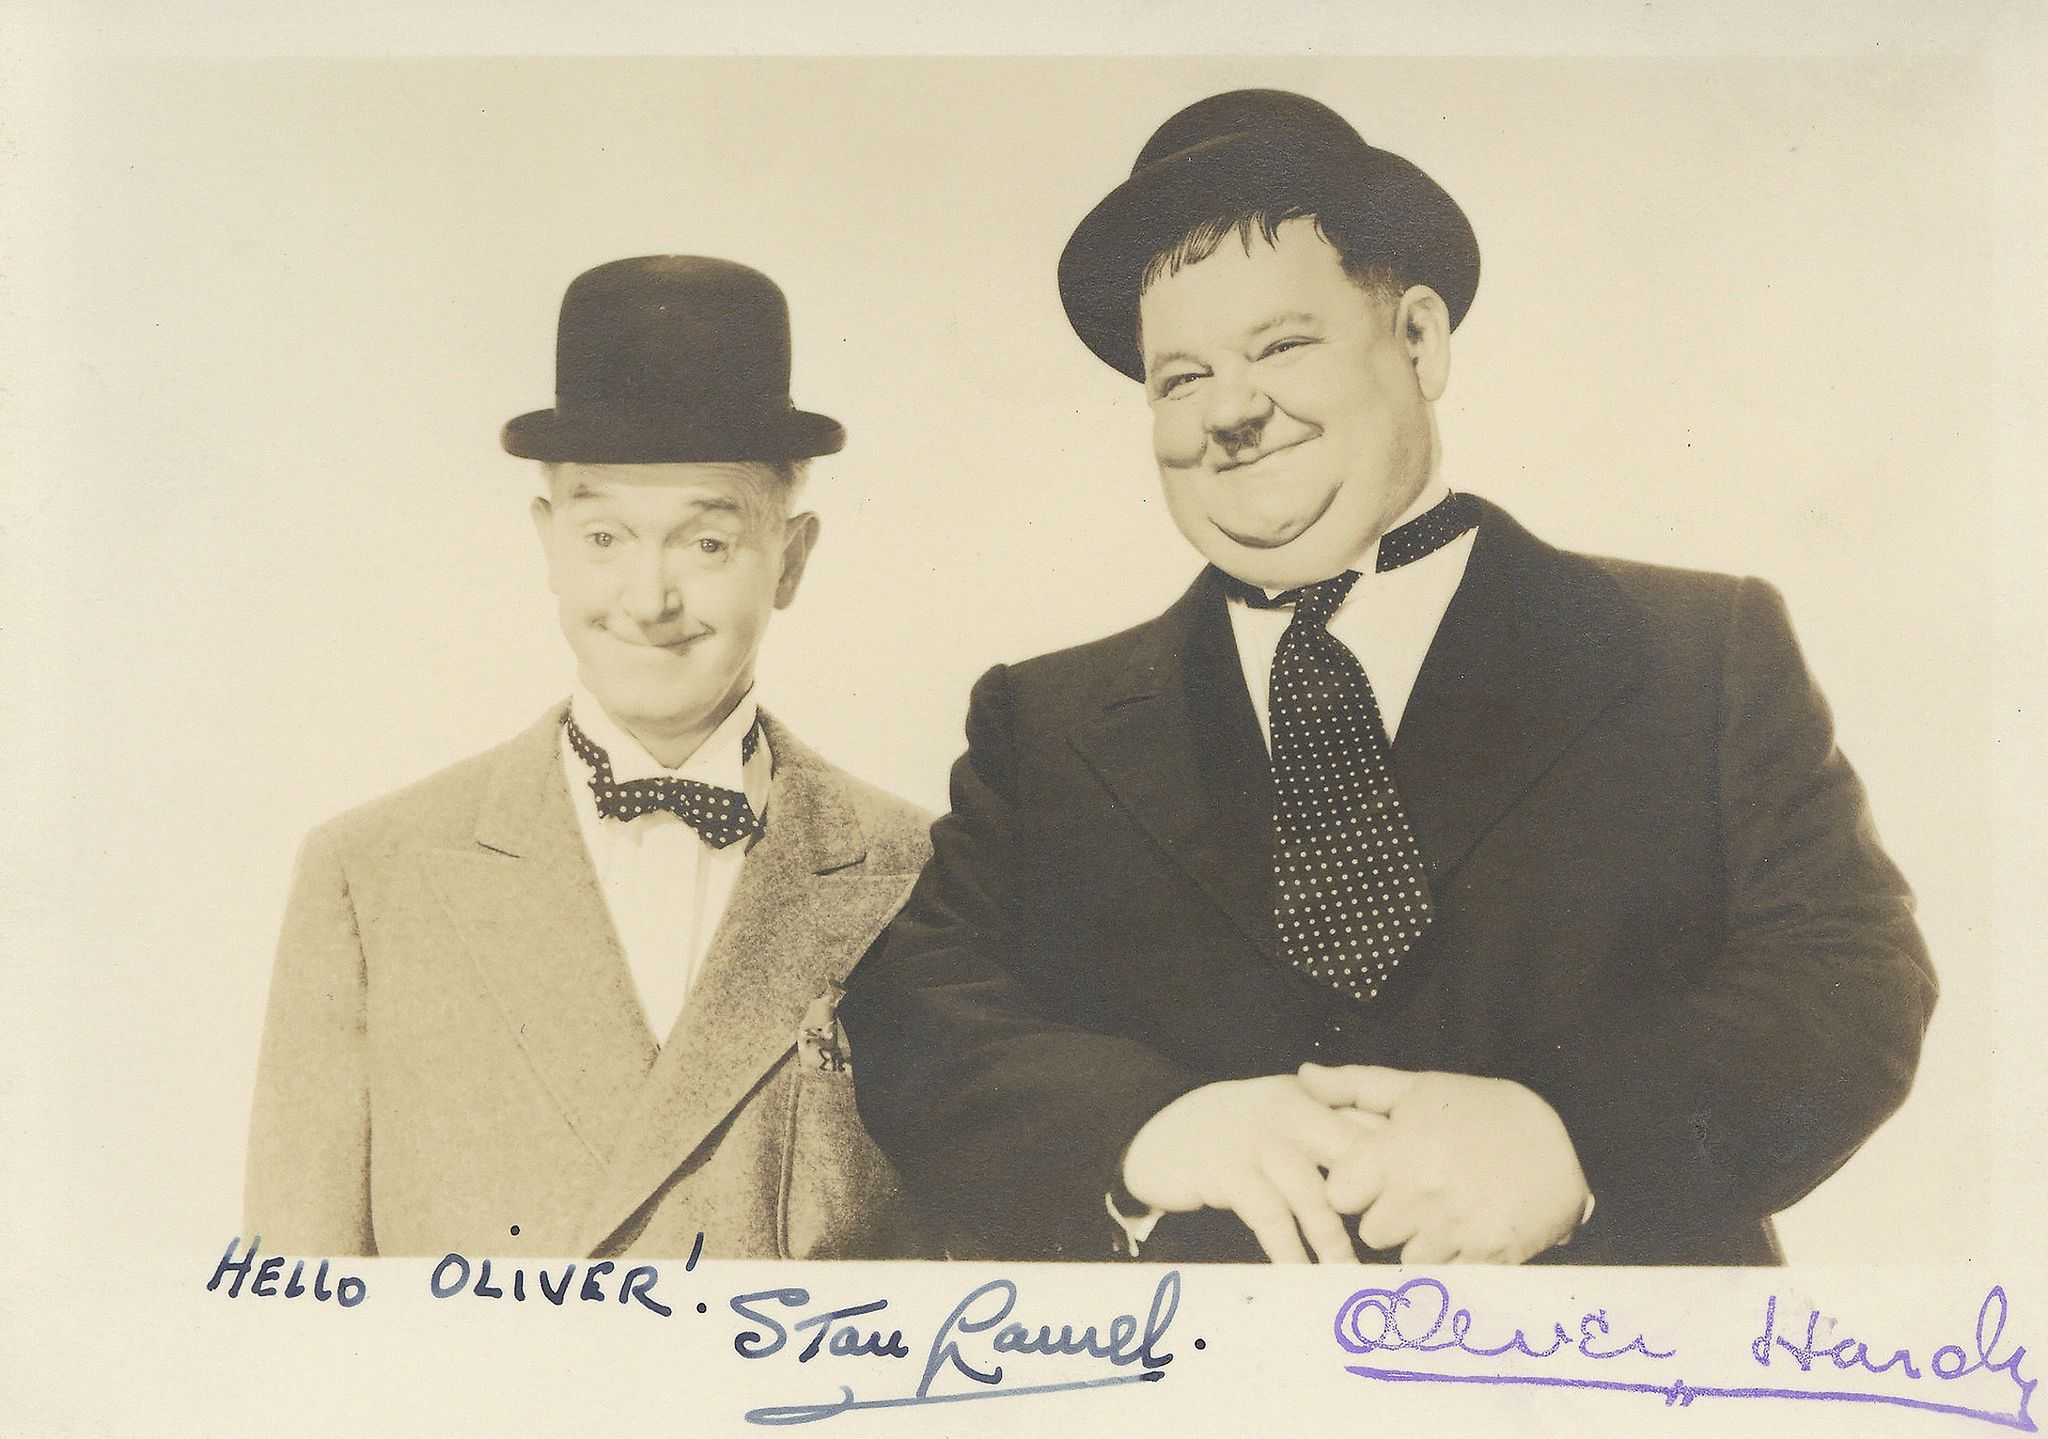 LAUREL, STAN & OLIVER HARDY - Vintage black and white, half length photograph of Stan Laurel